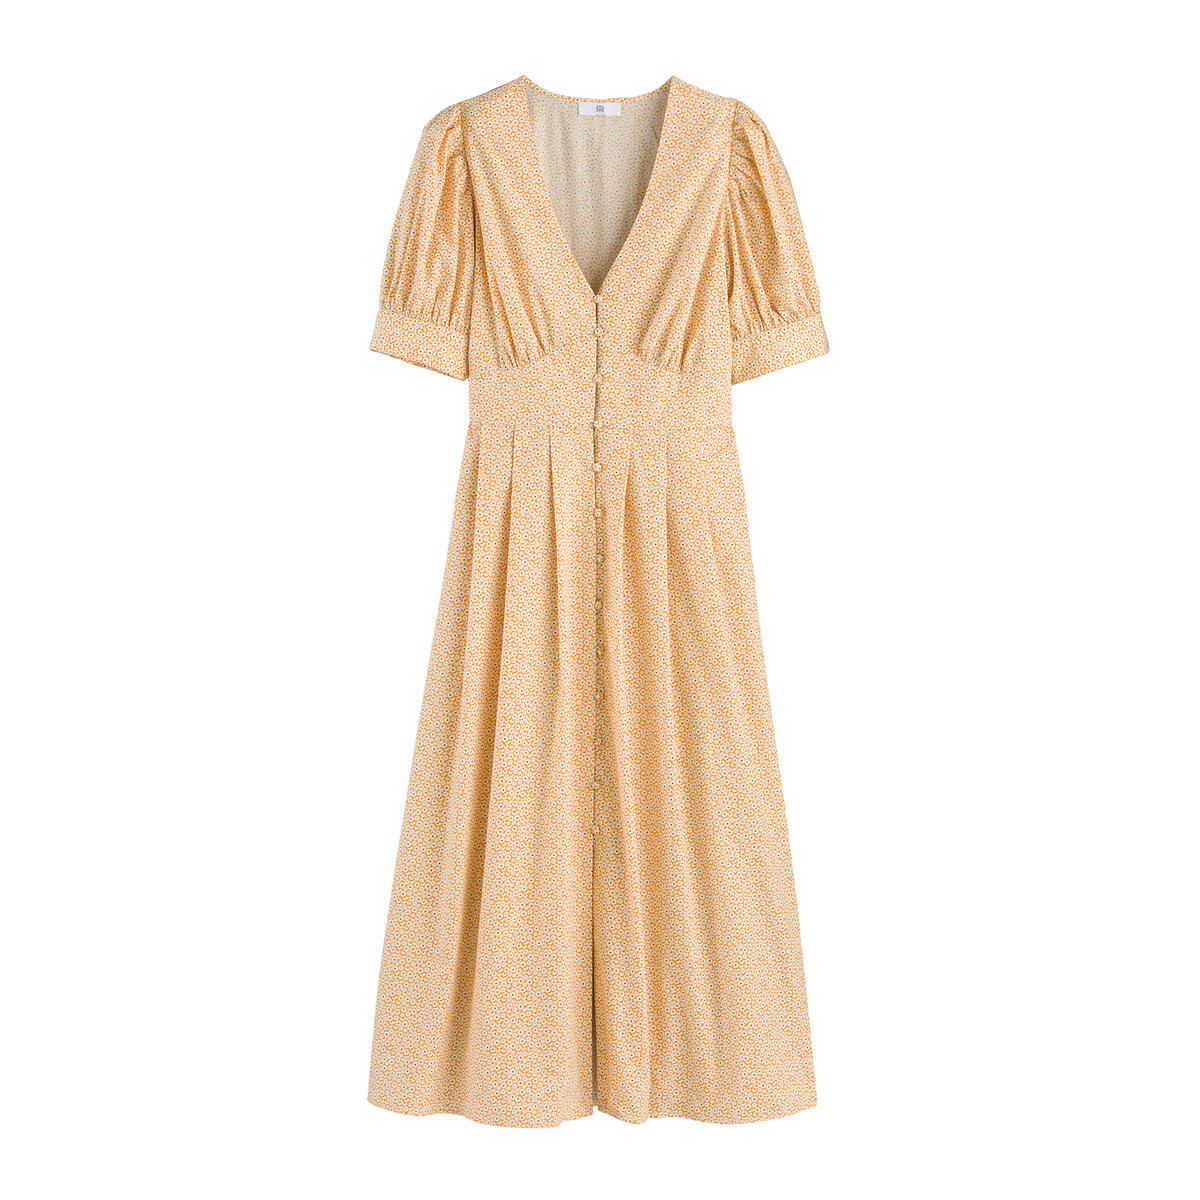 Платье Расклешенное V-образный вырез короткие рукава цветочный принт 46 желтый LaRedoute, размер 46 - фото 5